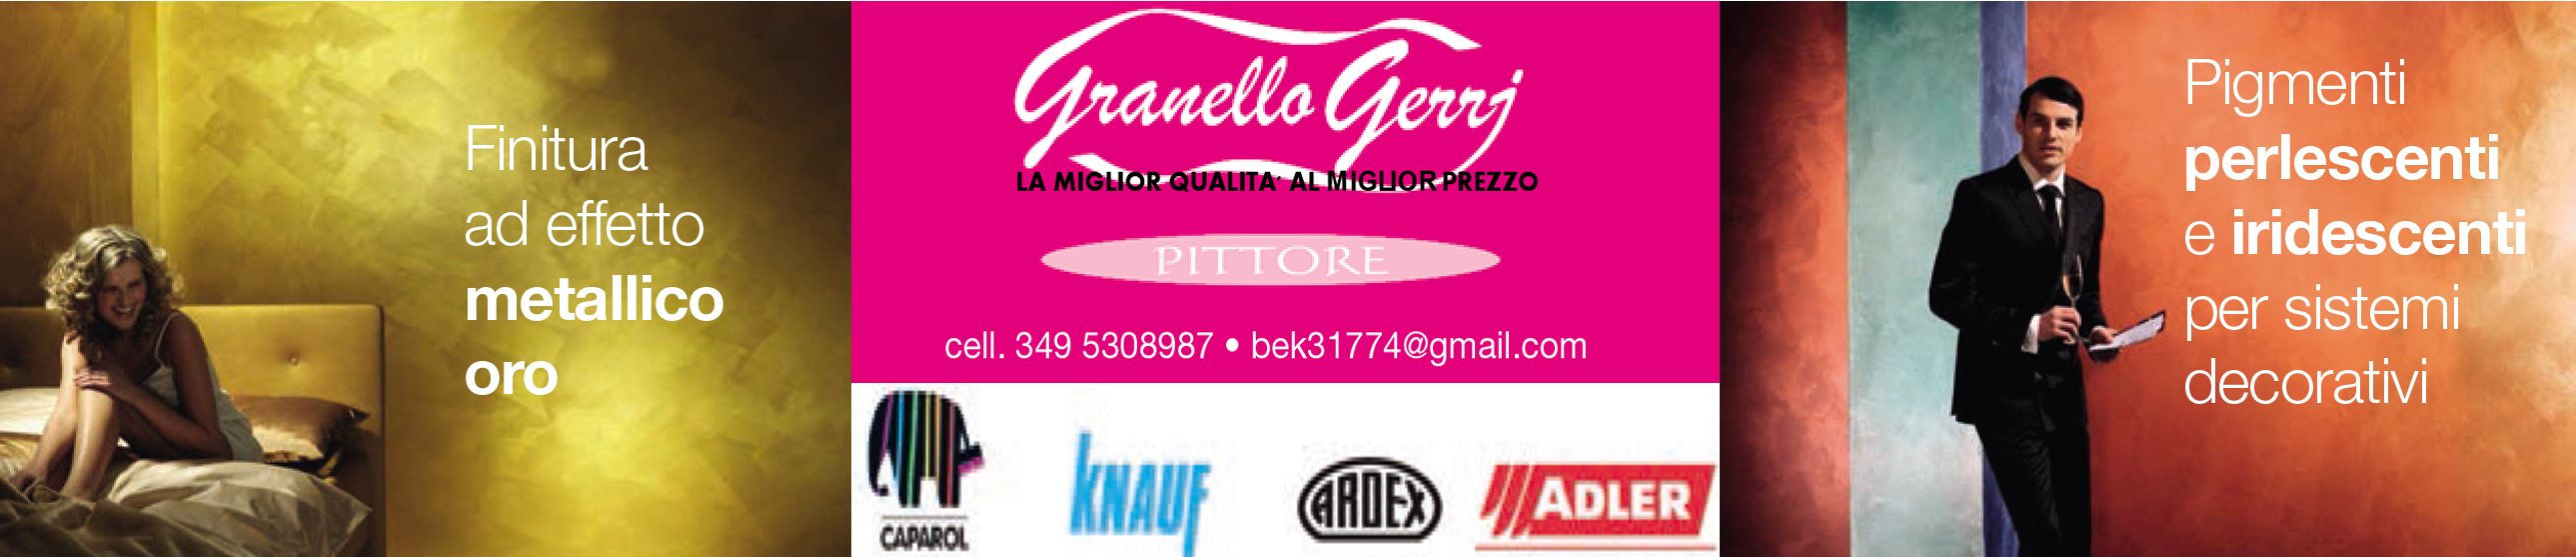 Granello Gerrj